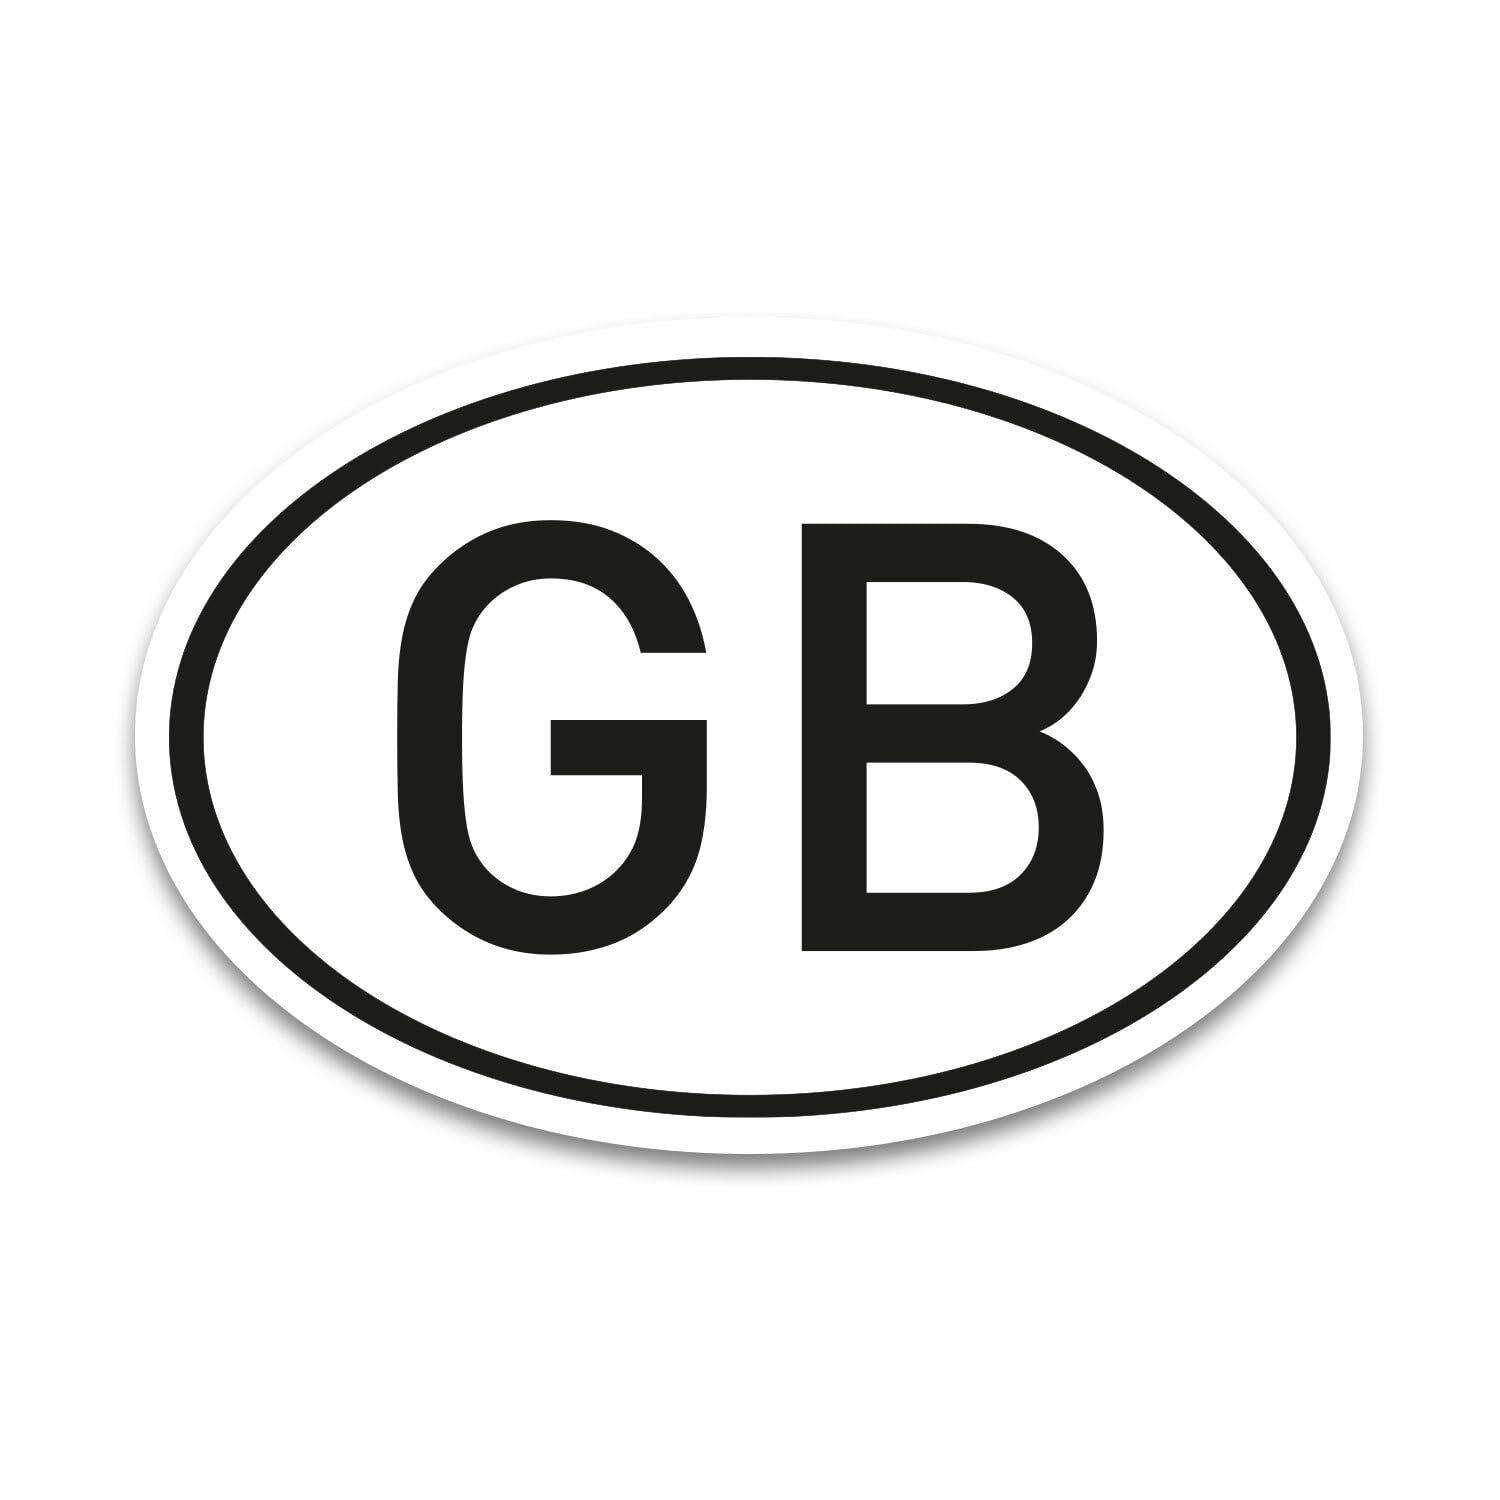 GB Magnet Länderkennzeichen Großbritannien Schwarz-Weiß - 17,5 x 11,5 cm DIN genormt - PKW LKW Wohnmobil Auto - verpflichtend außerhalb der EU - kfz_719 von iSecur